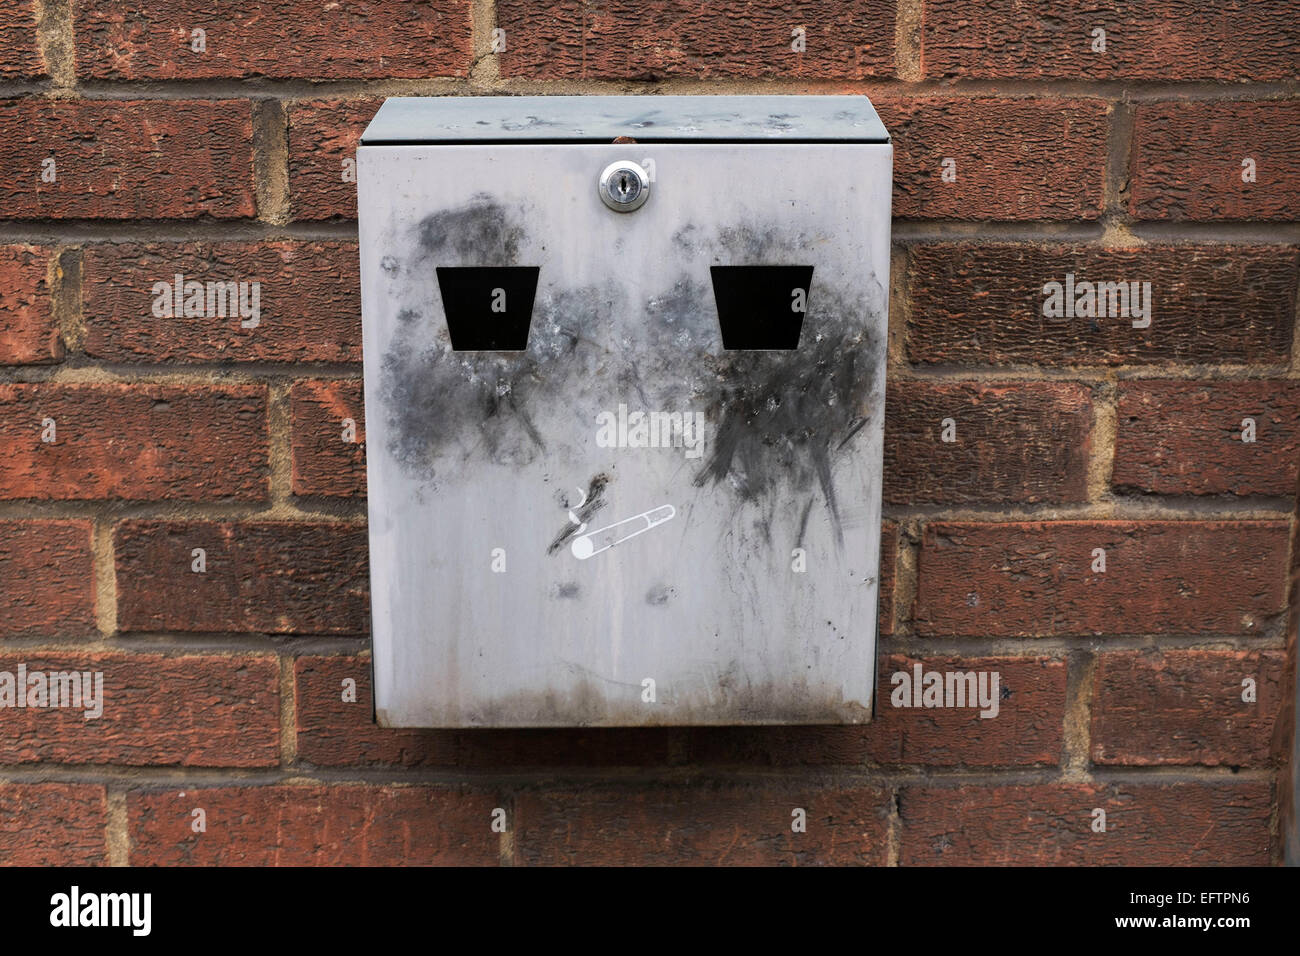 Aschenbecher, die aussieht wie ein Gesicht an der Wand außerhalb. London, UK. Seit das Rauchverbot an öffentlichen Plätzen sind diese Aschenbecher ein alltäglicher Anblick geworden, wie Raucher zum Rauchen gehen. Stockfoto